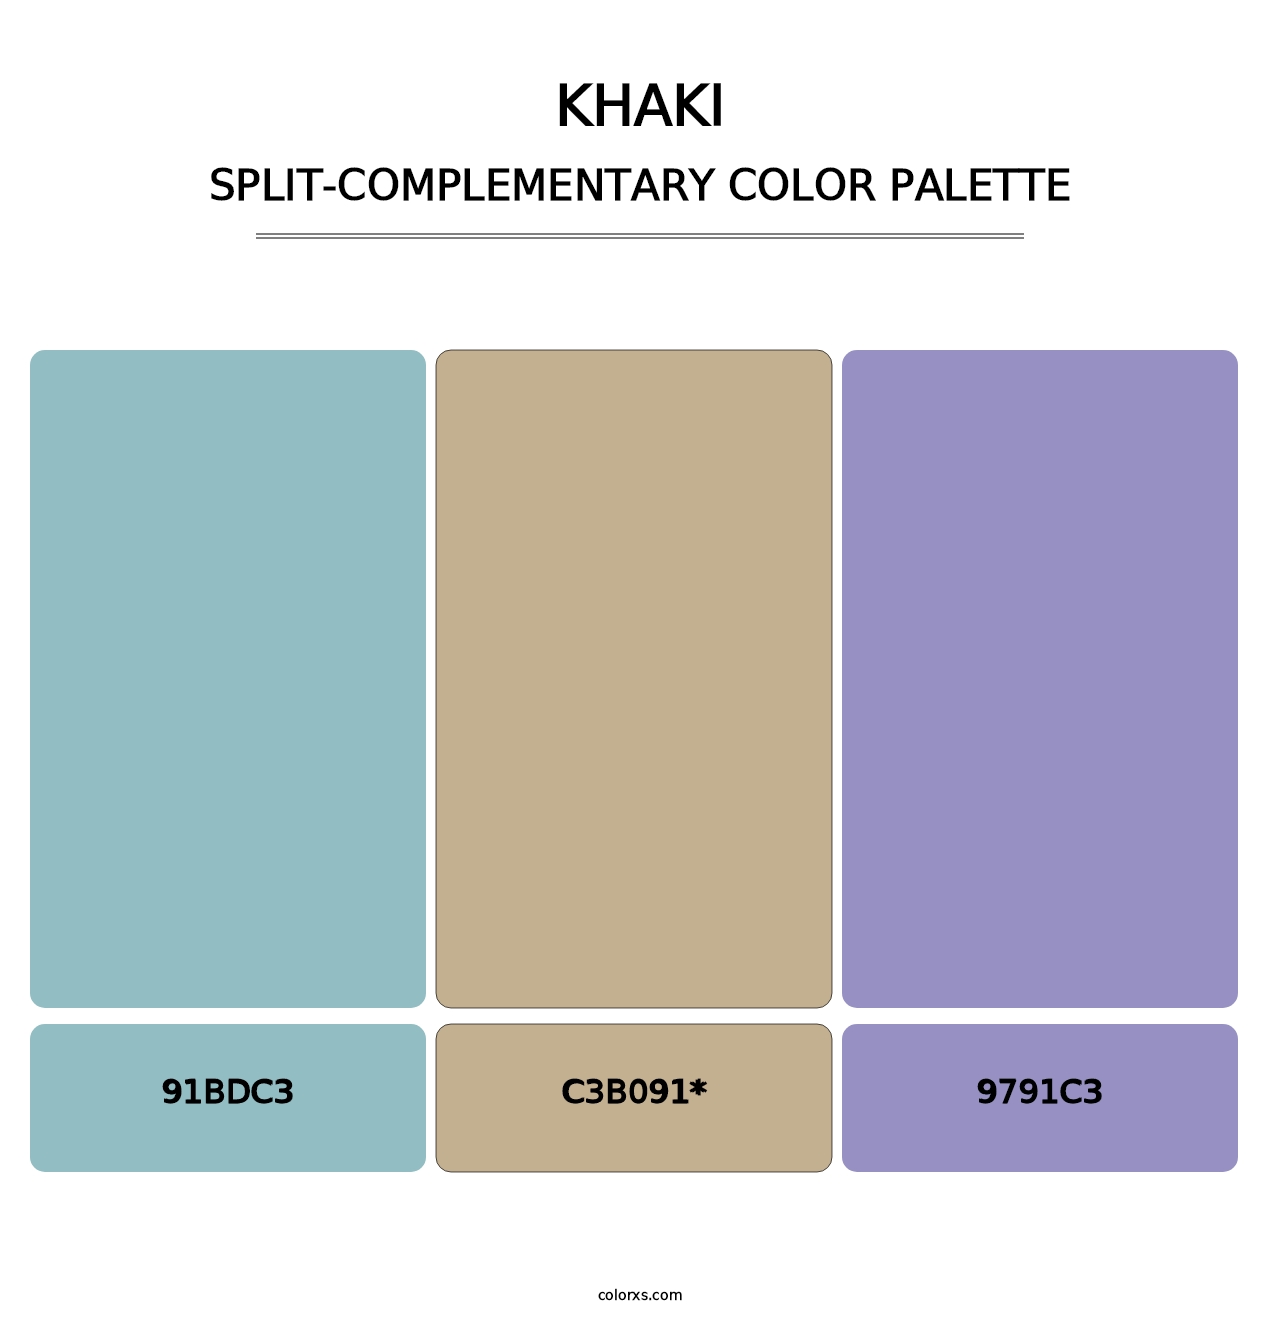 Khaki - Split-Complementary Color Palette